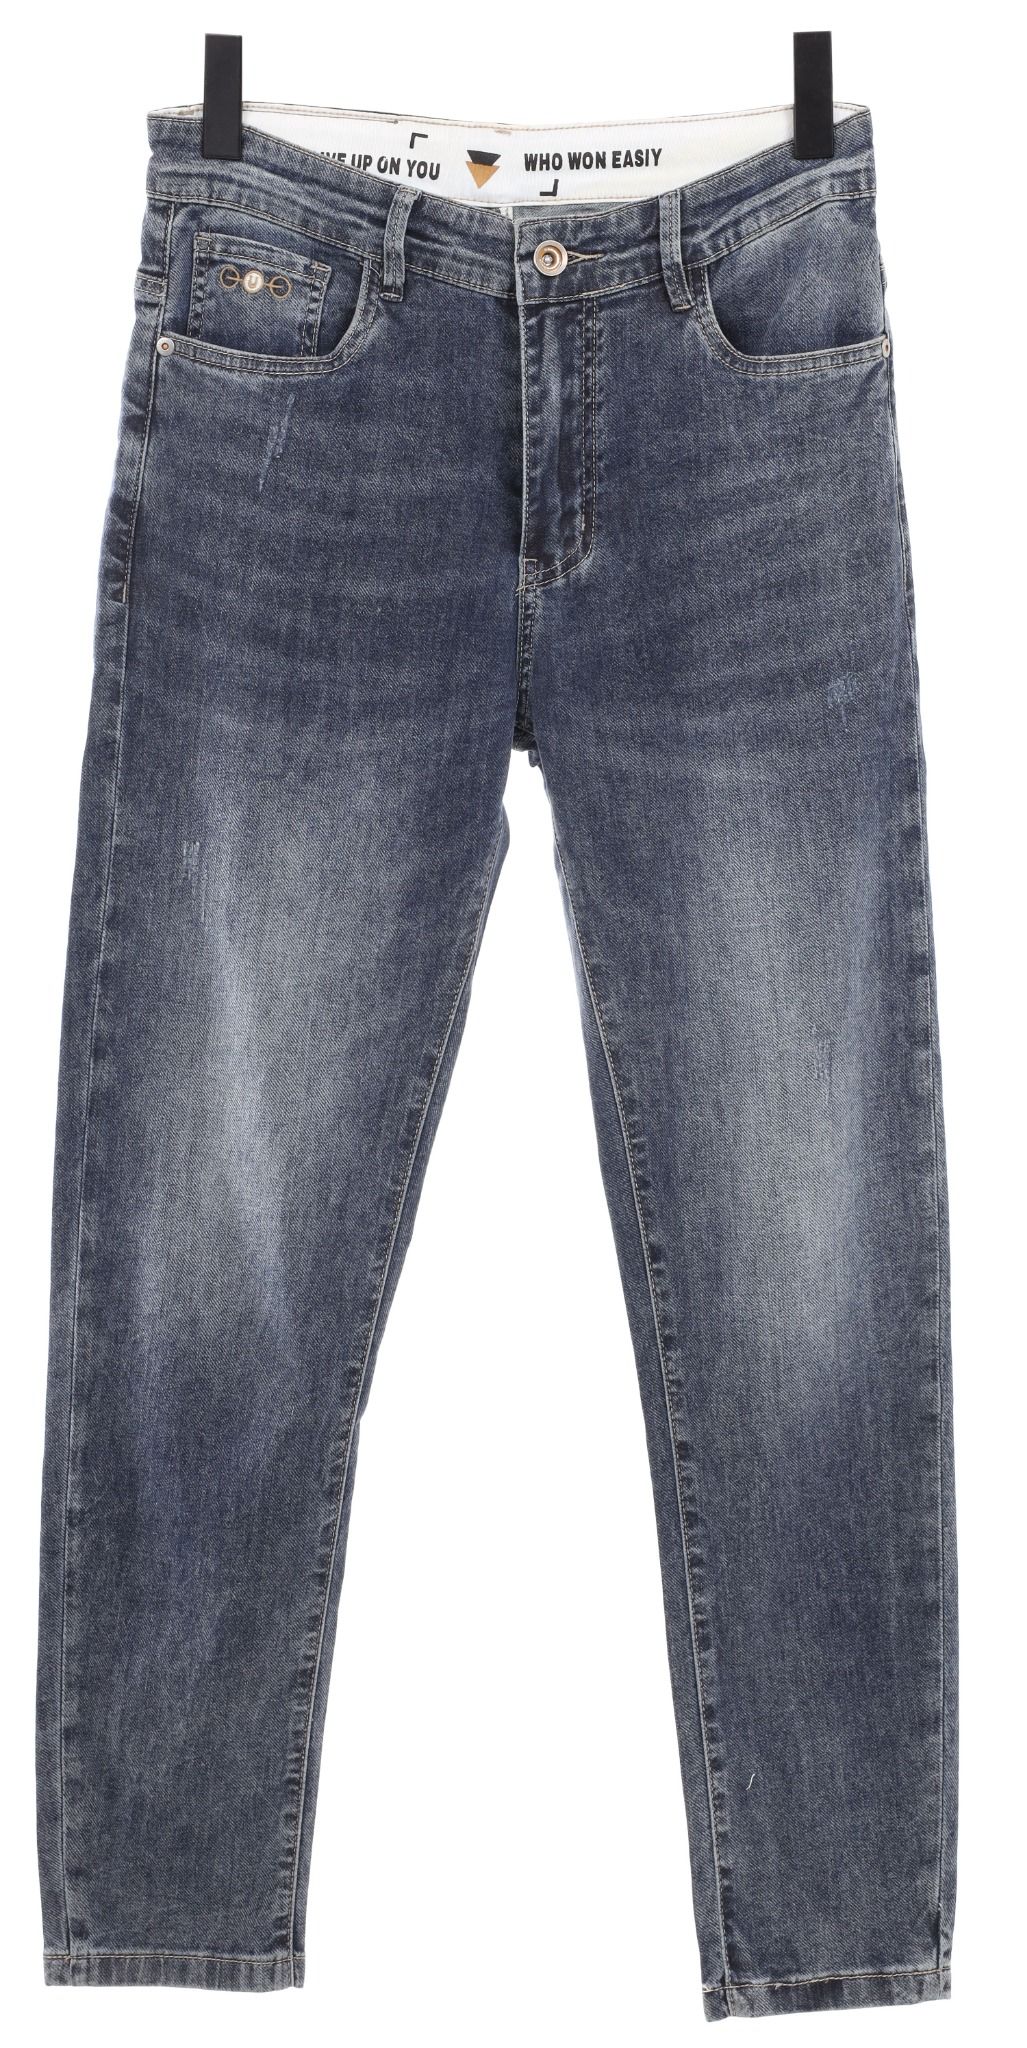  Quần Jeans Slimfit - 9801 